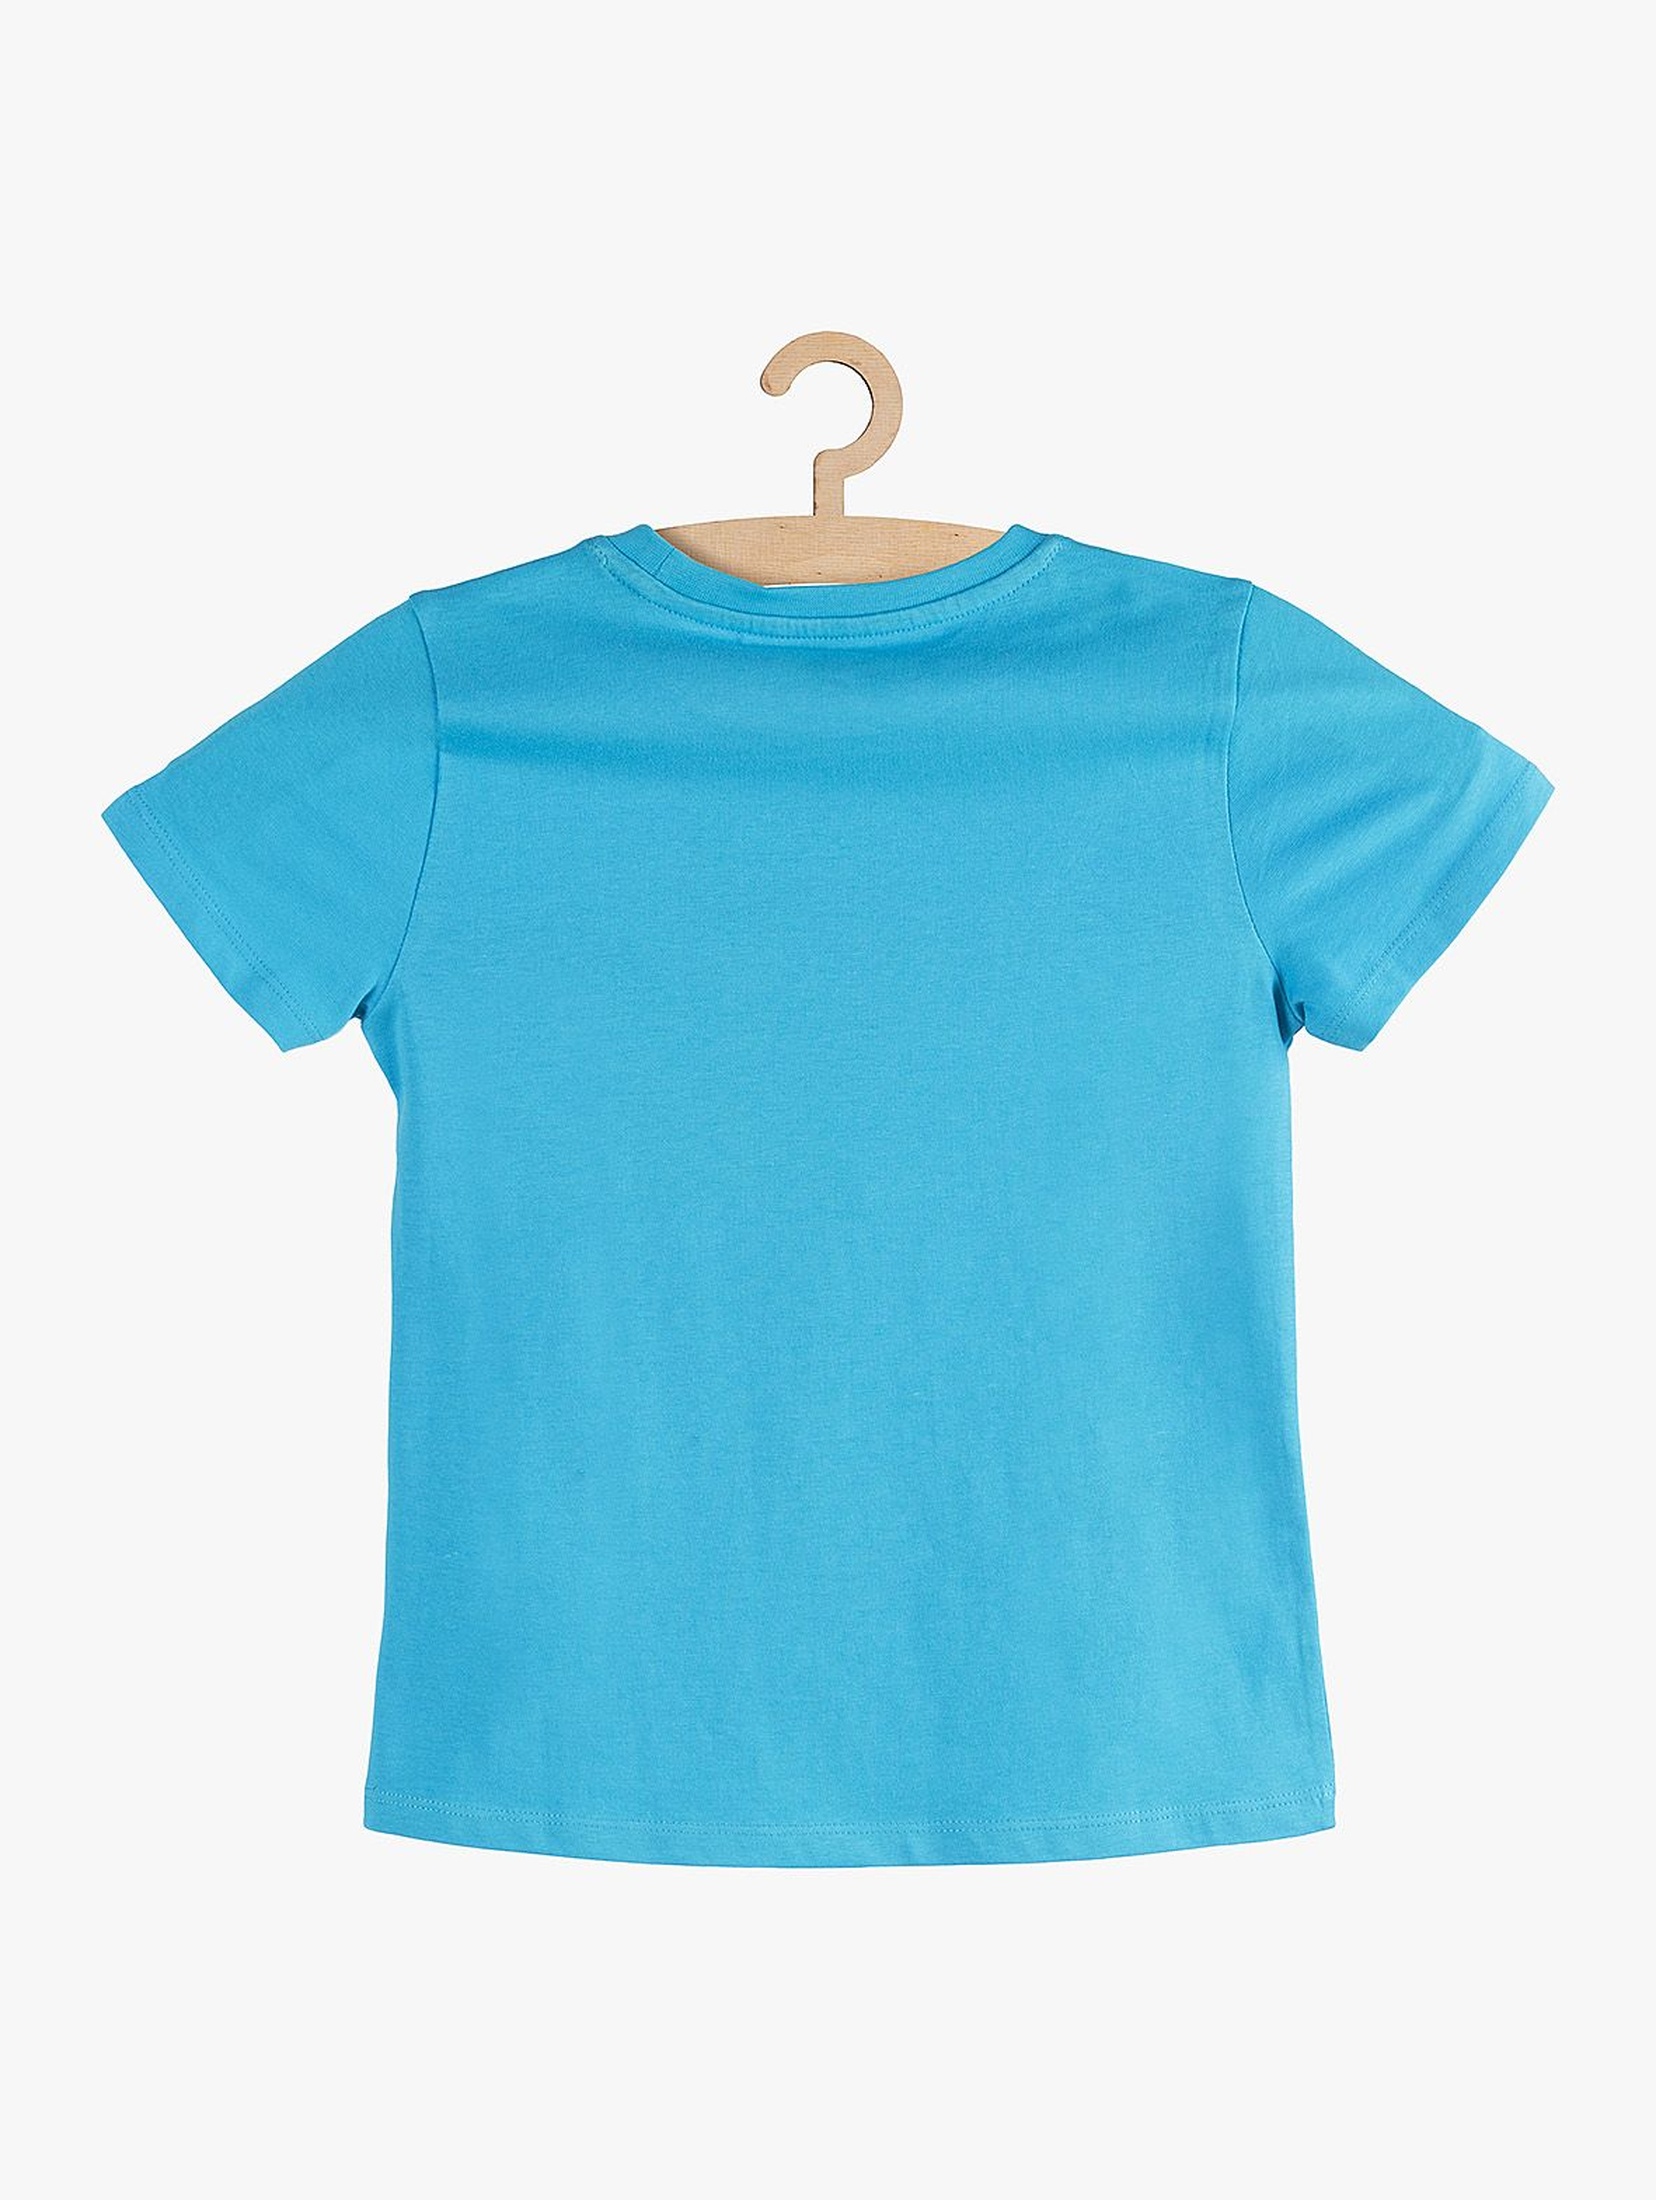 T-shirt chłopięcy niebieski bawełniany